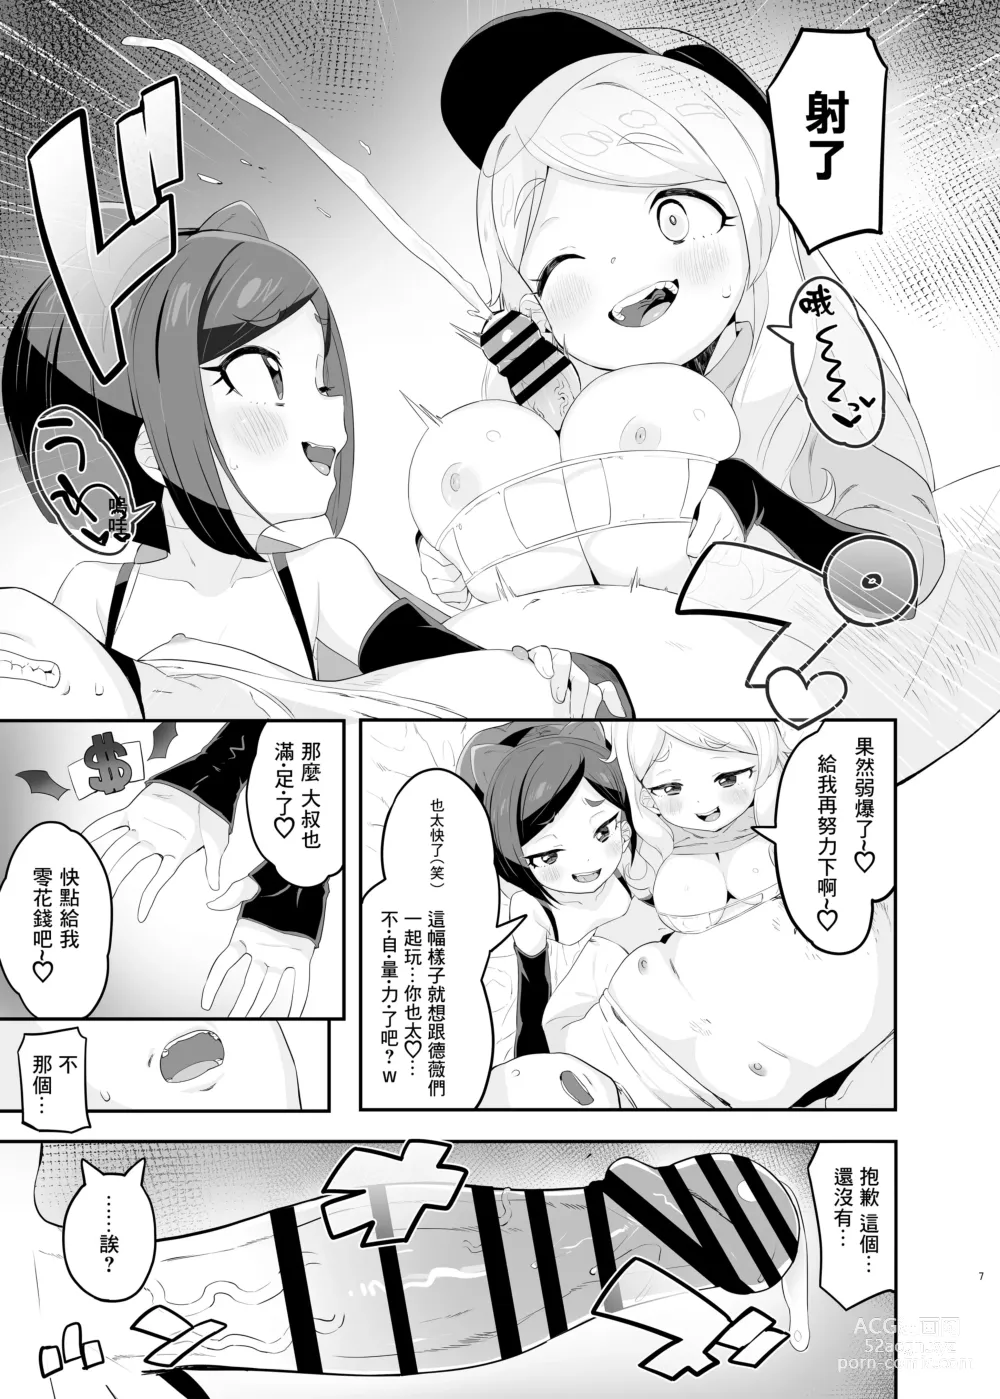 Page 7 of doujinshi Retsujou-ban Mesugaki Trix Lou VS Devi VS Sao-yaku Ojisan